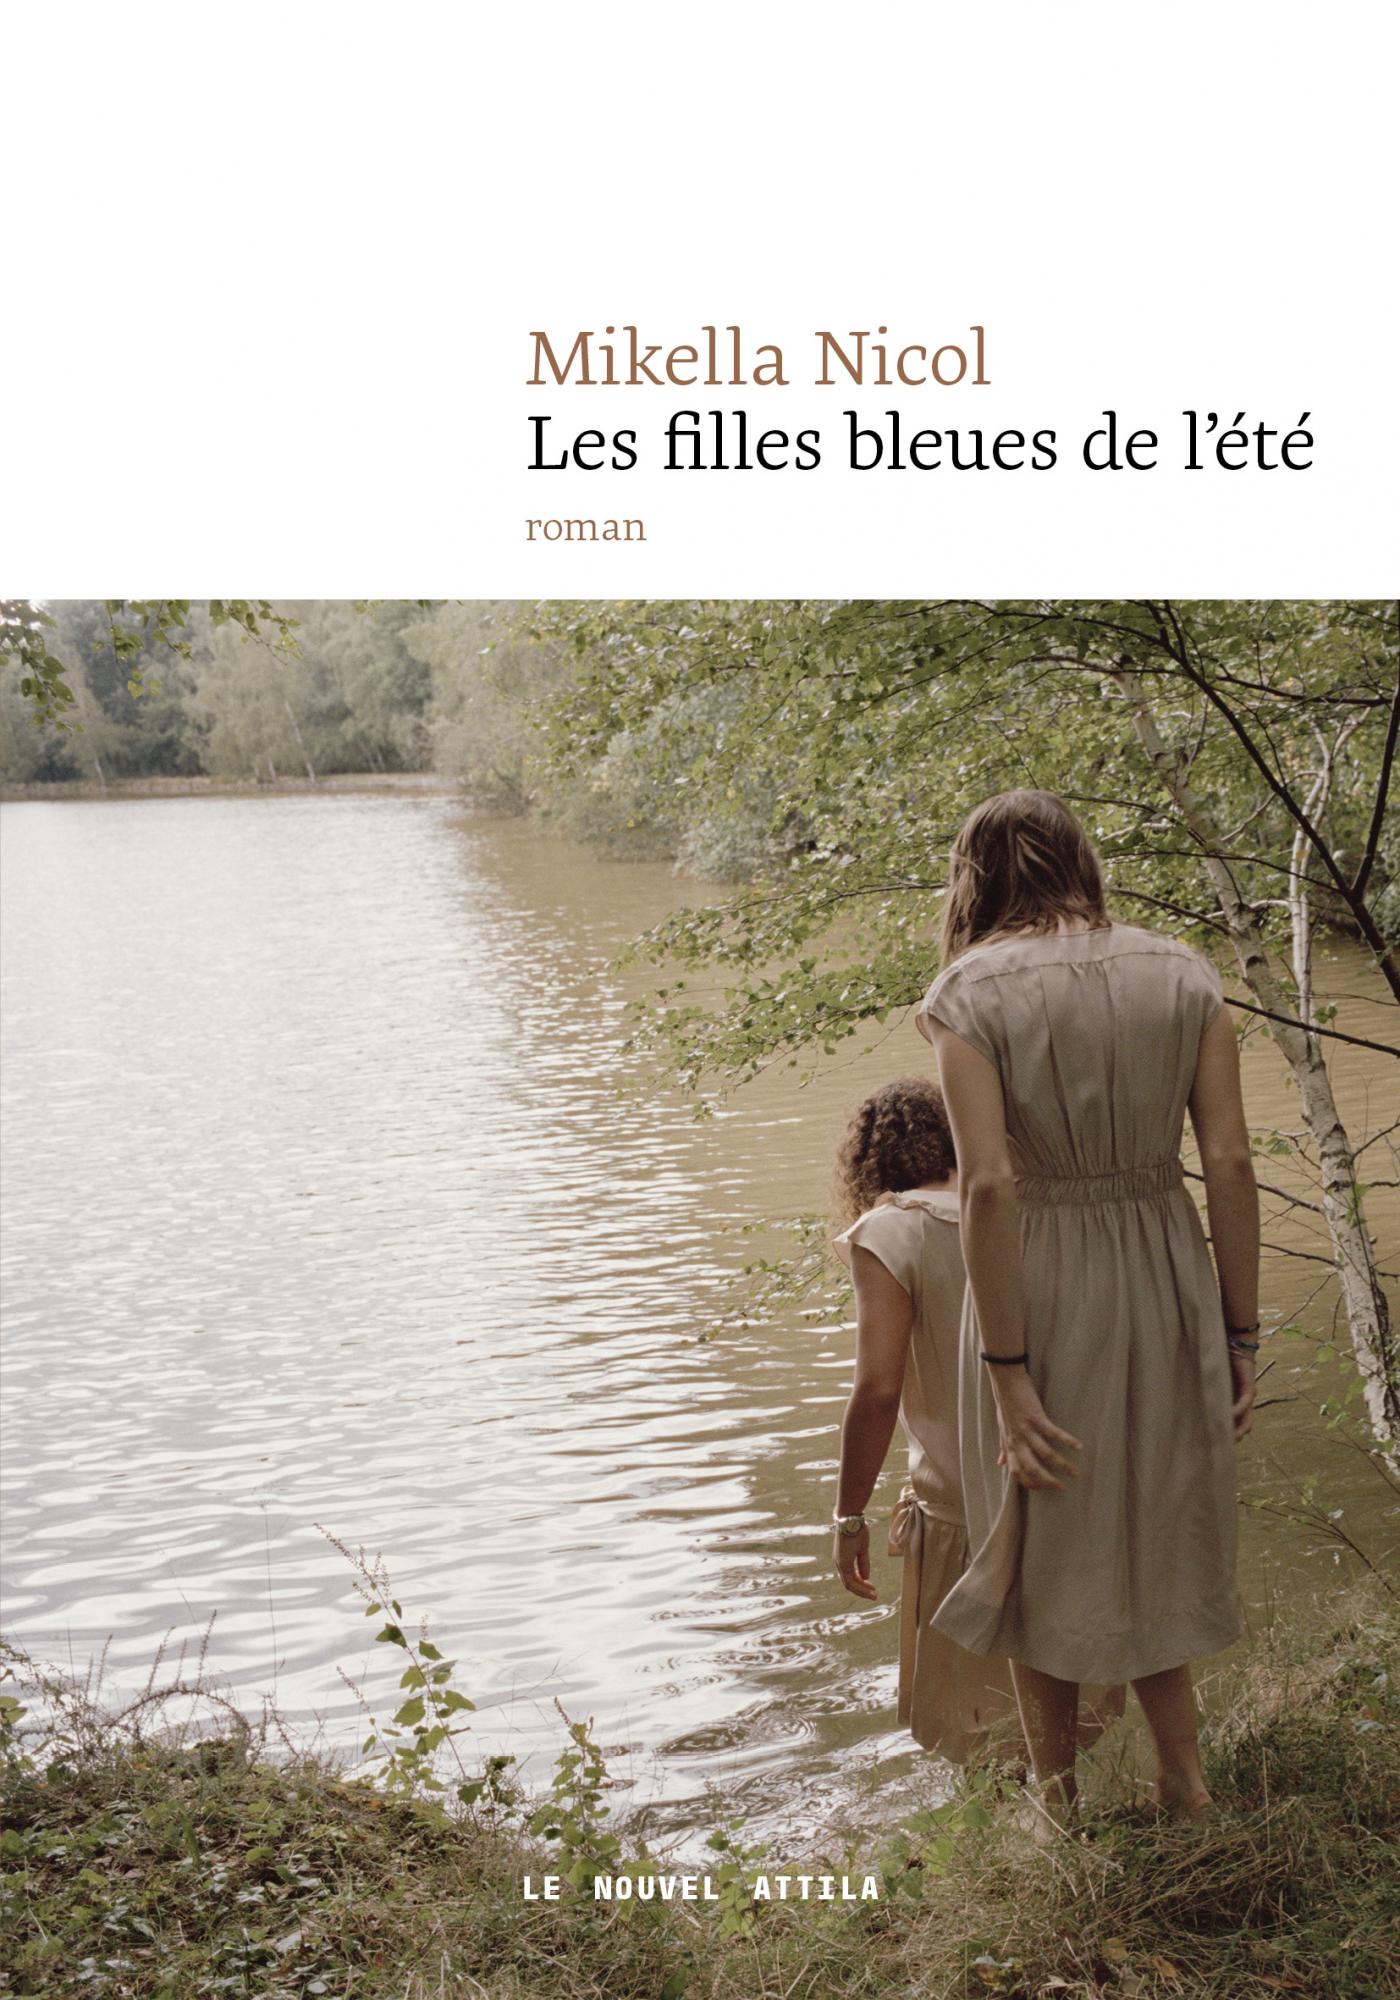 Couverture du livre Les filles bleues de l'été, avec une image de filles qui sont en train d'entrer dans un lac